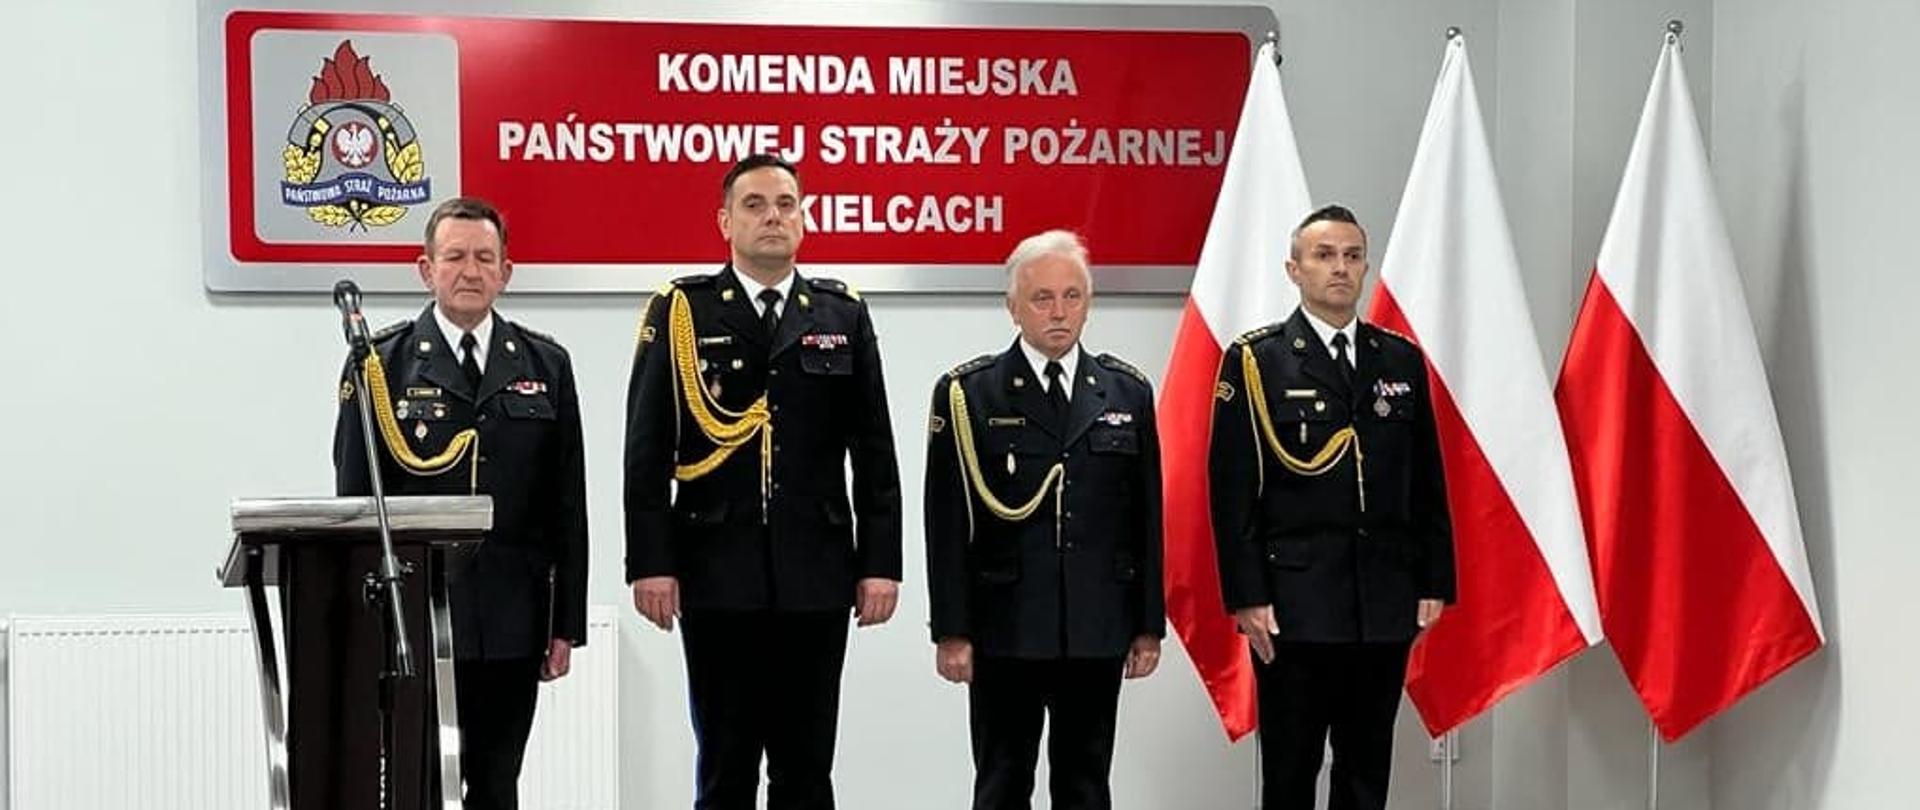 Na zdjęciu widzimy czterech mężczyzn stojących w szeregu w mundurach strażackich.